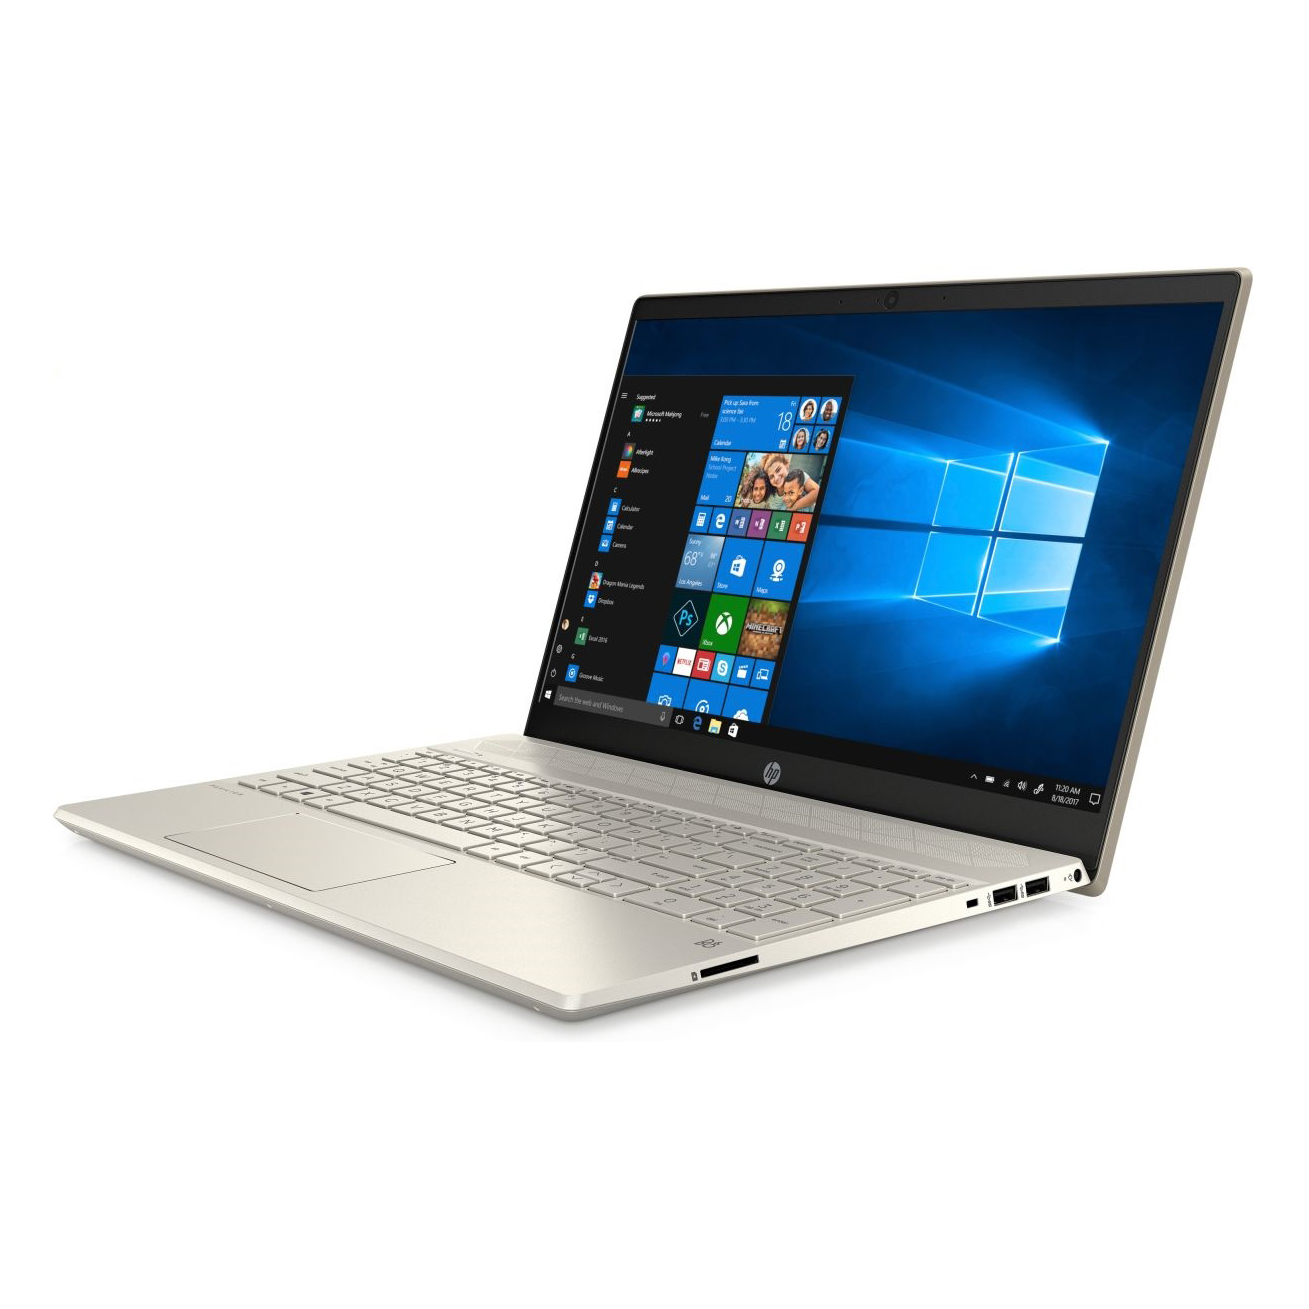 Laptop HP Pavilion 15 CS3008TU ( i3-1005G1/4GB RAM/256GB SSD/15.6 inch FHD/Win 10/Vàng) - 8QP02PA